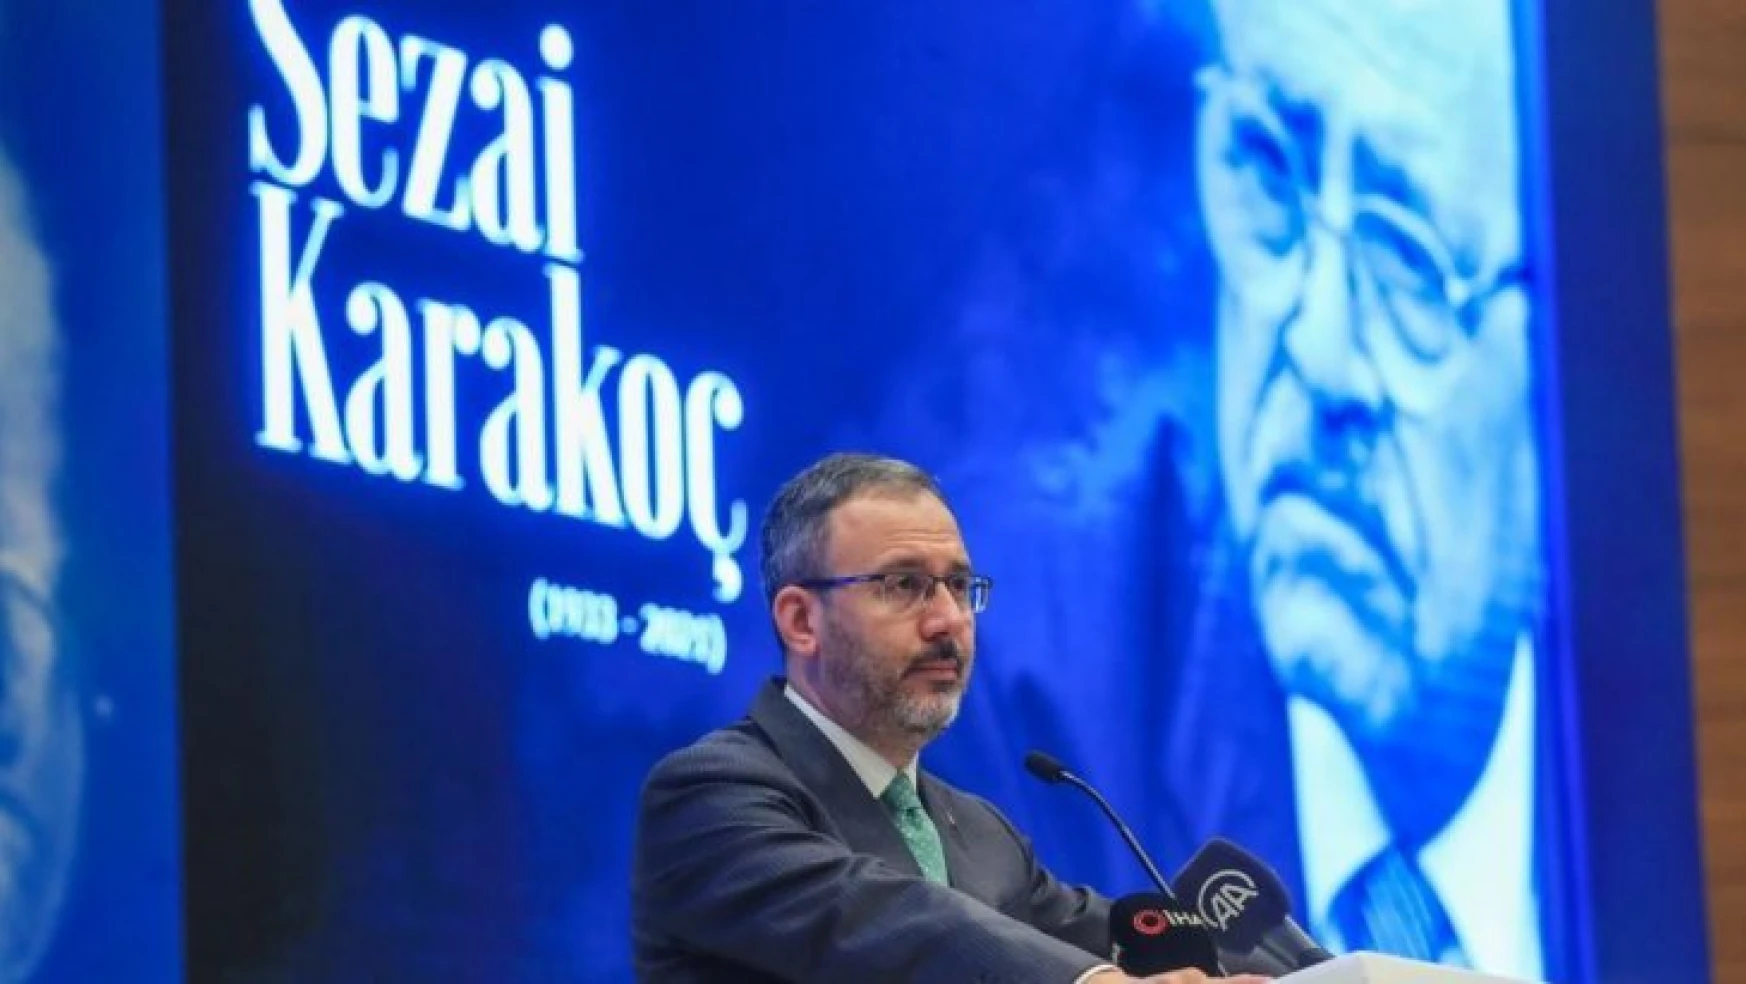 Gençlik ve Spor Bakanı Kasapoğlu: 'Üstat Sezai Karakoç, fikirleriyle, dava adamlığıyla, üstün edebi eserleriyle ve örnek şahsiyetiyle asrımızın parlayan yıldızlarından biriydi'